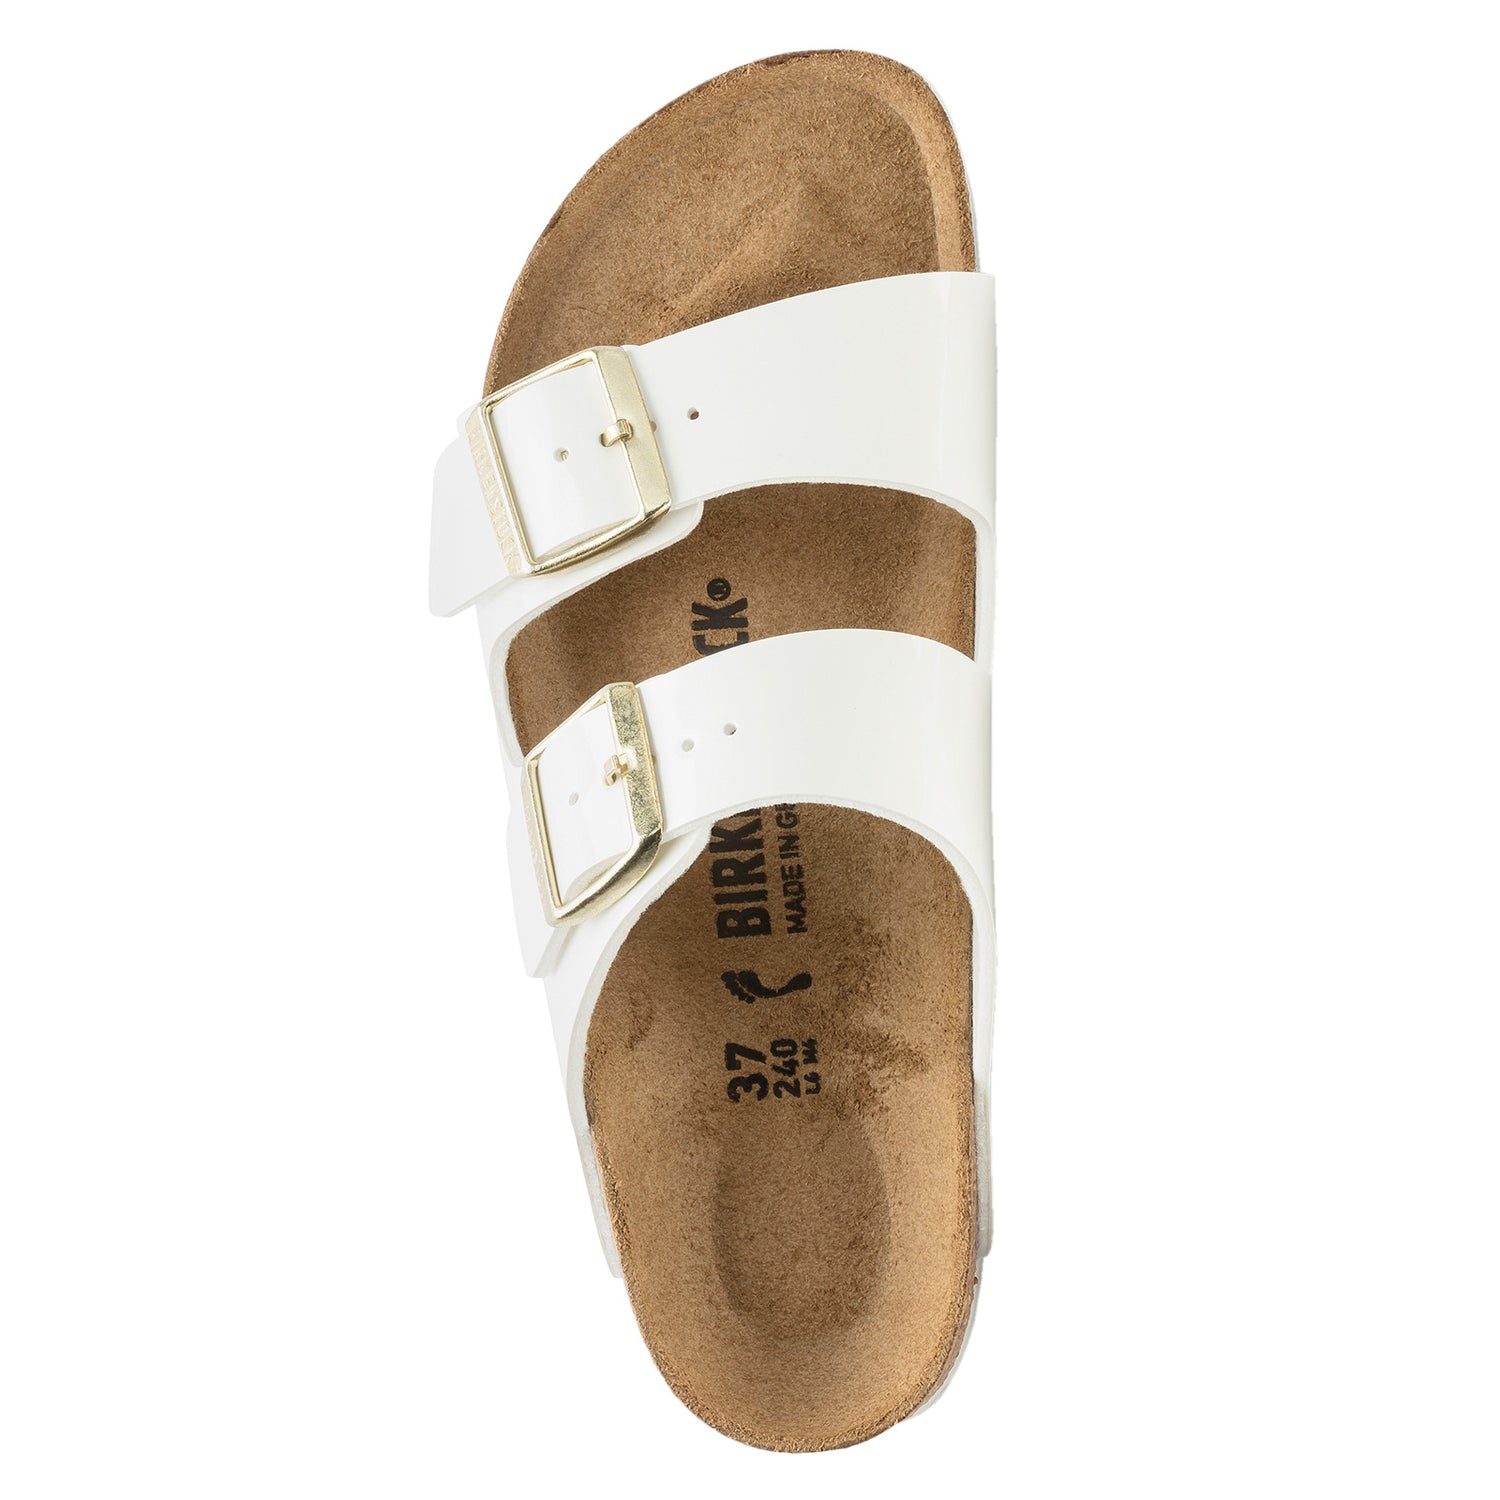 Peltz Shoes  Women's Birkenstock Arizona Slide Sandal - Narrow Fit White Patent Birkoflor 1005 294 N